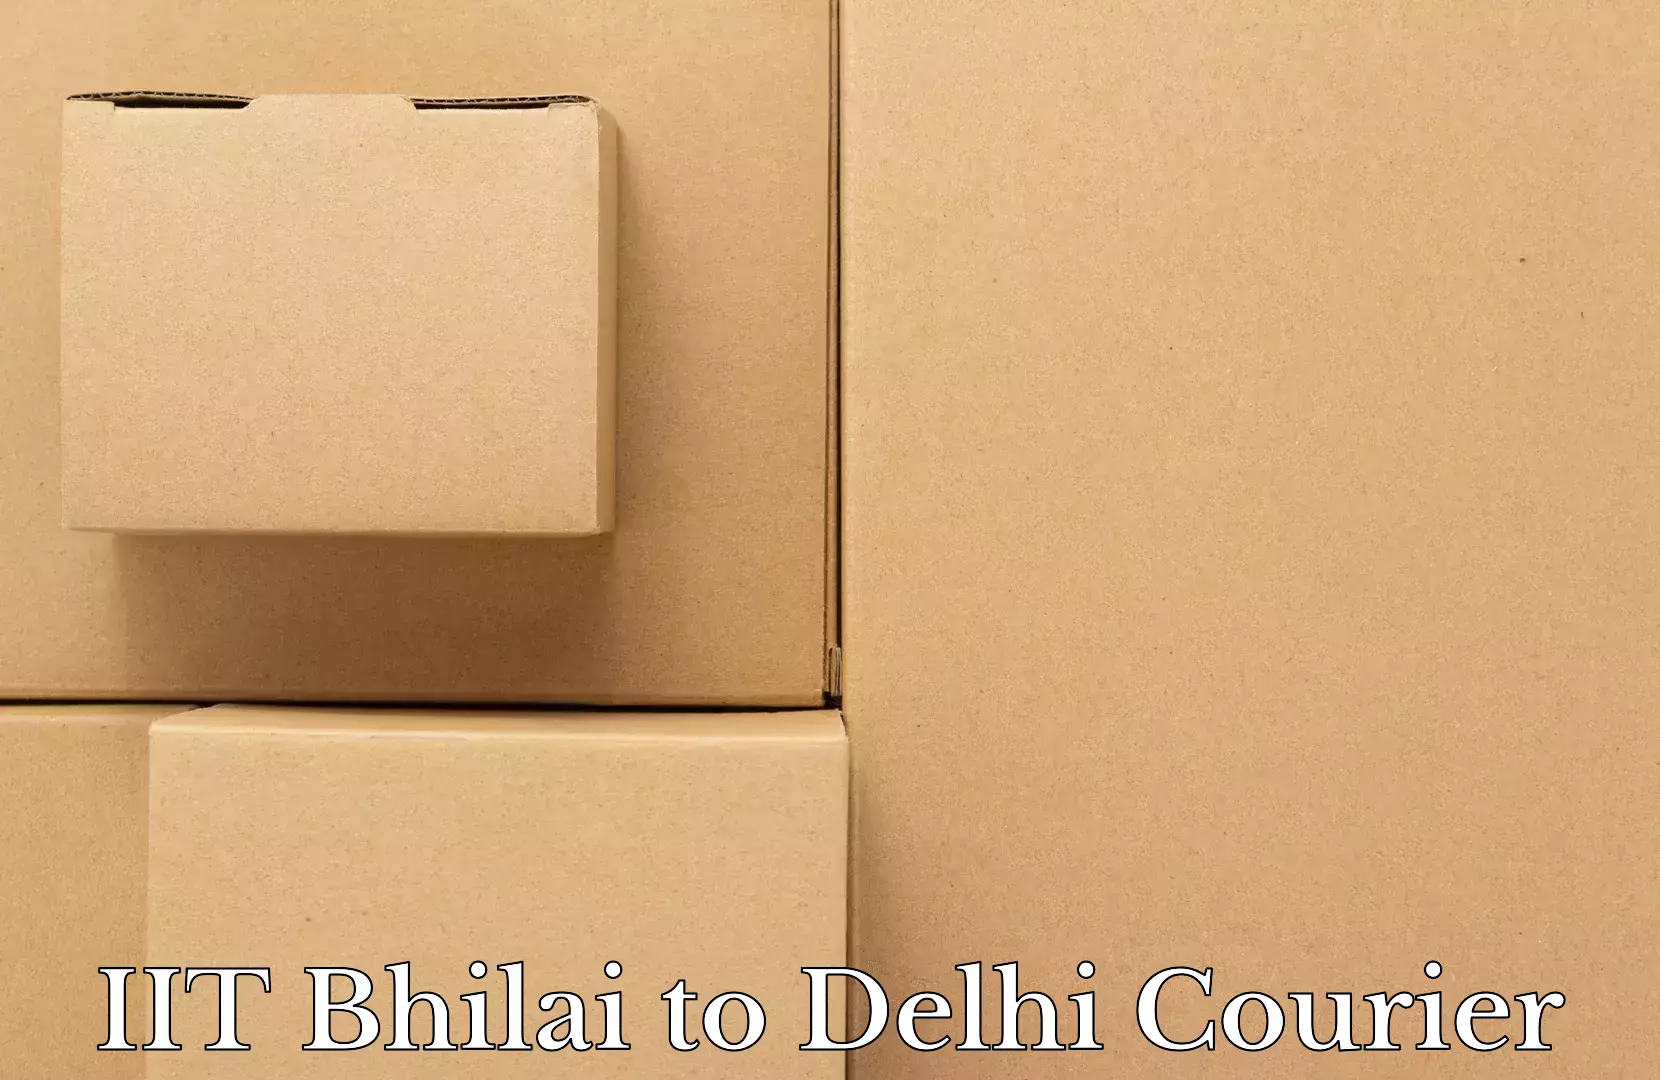 Baggage shipping service IIT Bhilai to Burari